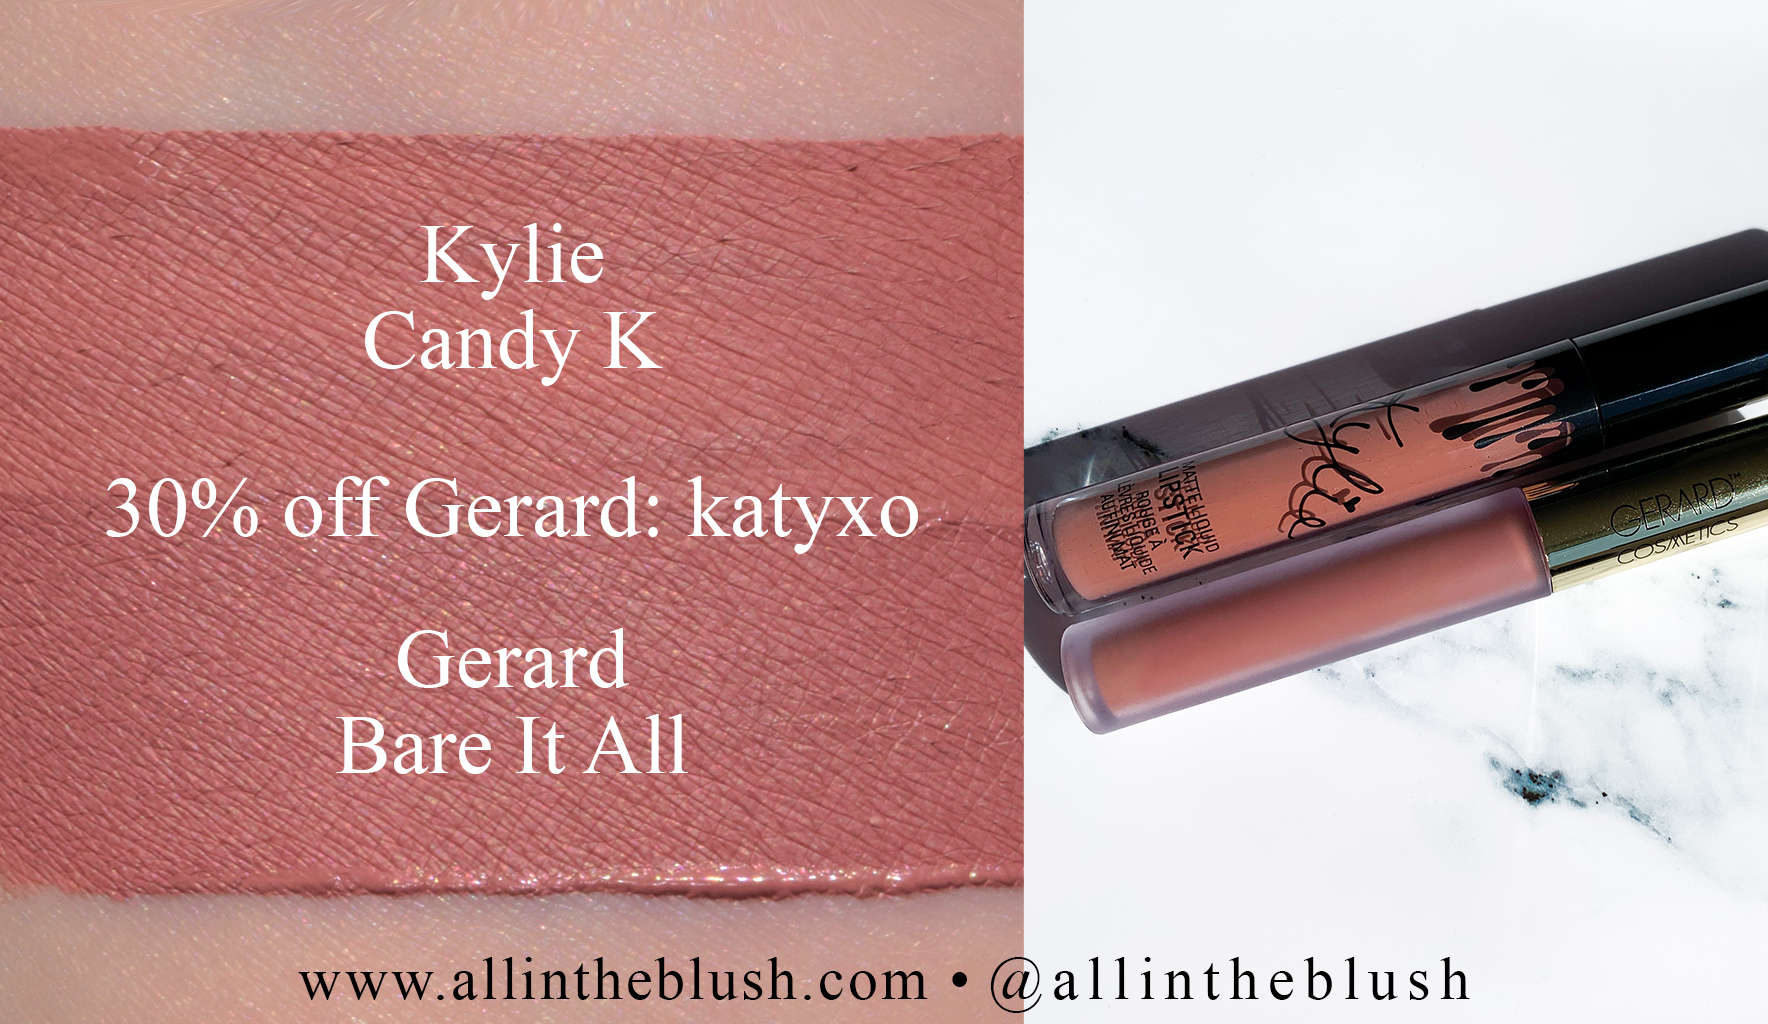 Alle Kylie jenner lipstick candy aufgelistet